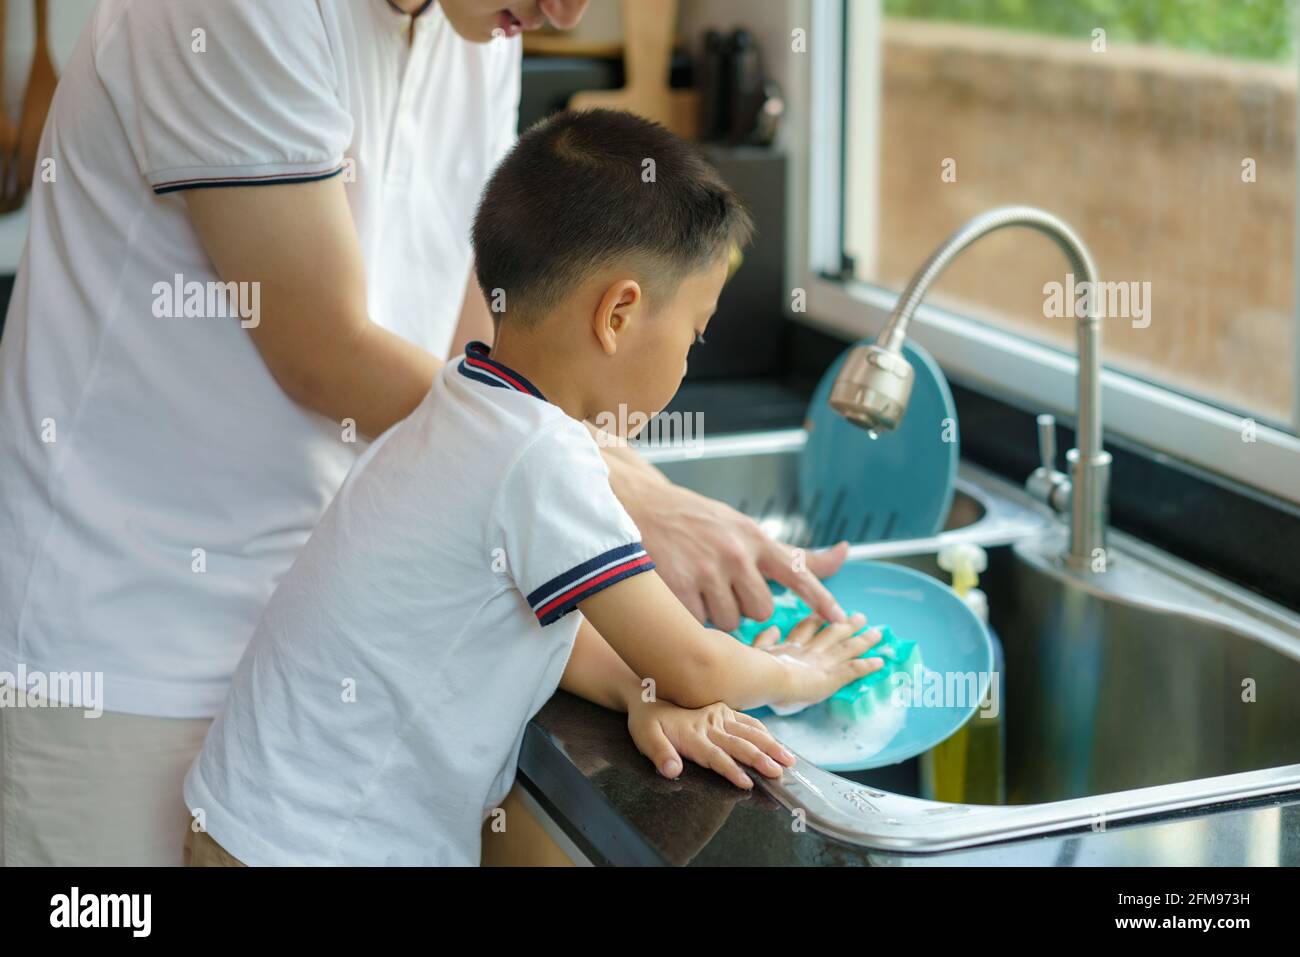 Asiatischer Vater lehrt seinen Sohn, wie man Geschirr waschen, Hilfe bei der Hausarbeit in der Küche zu Hause, Väter interagieren mit ihren Kindern während der d Stockfoto